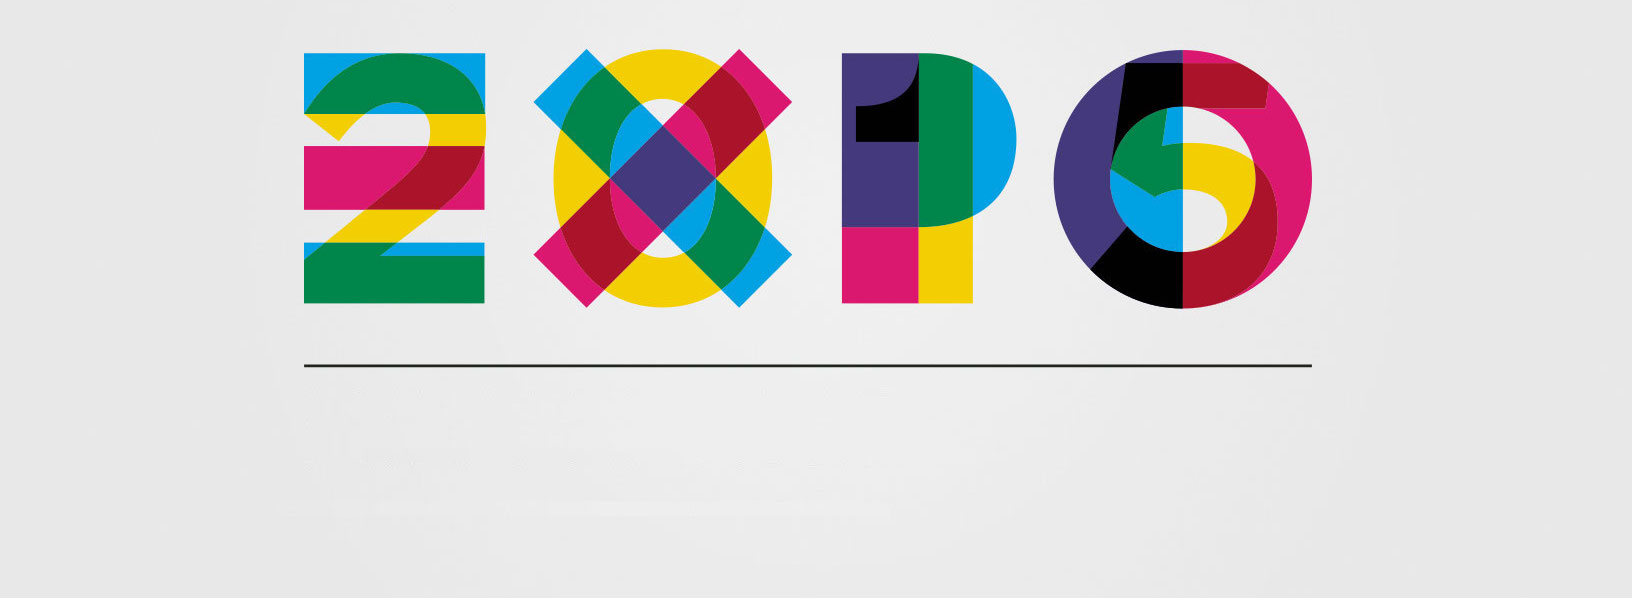 logo di expo 2015 Milano